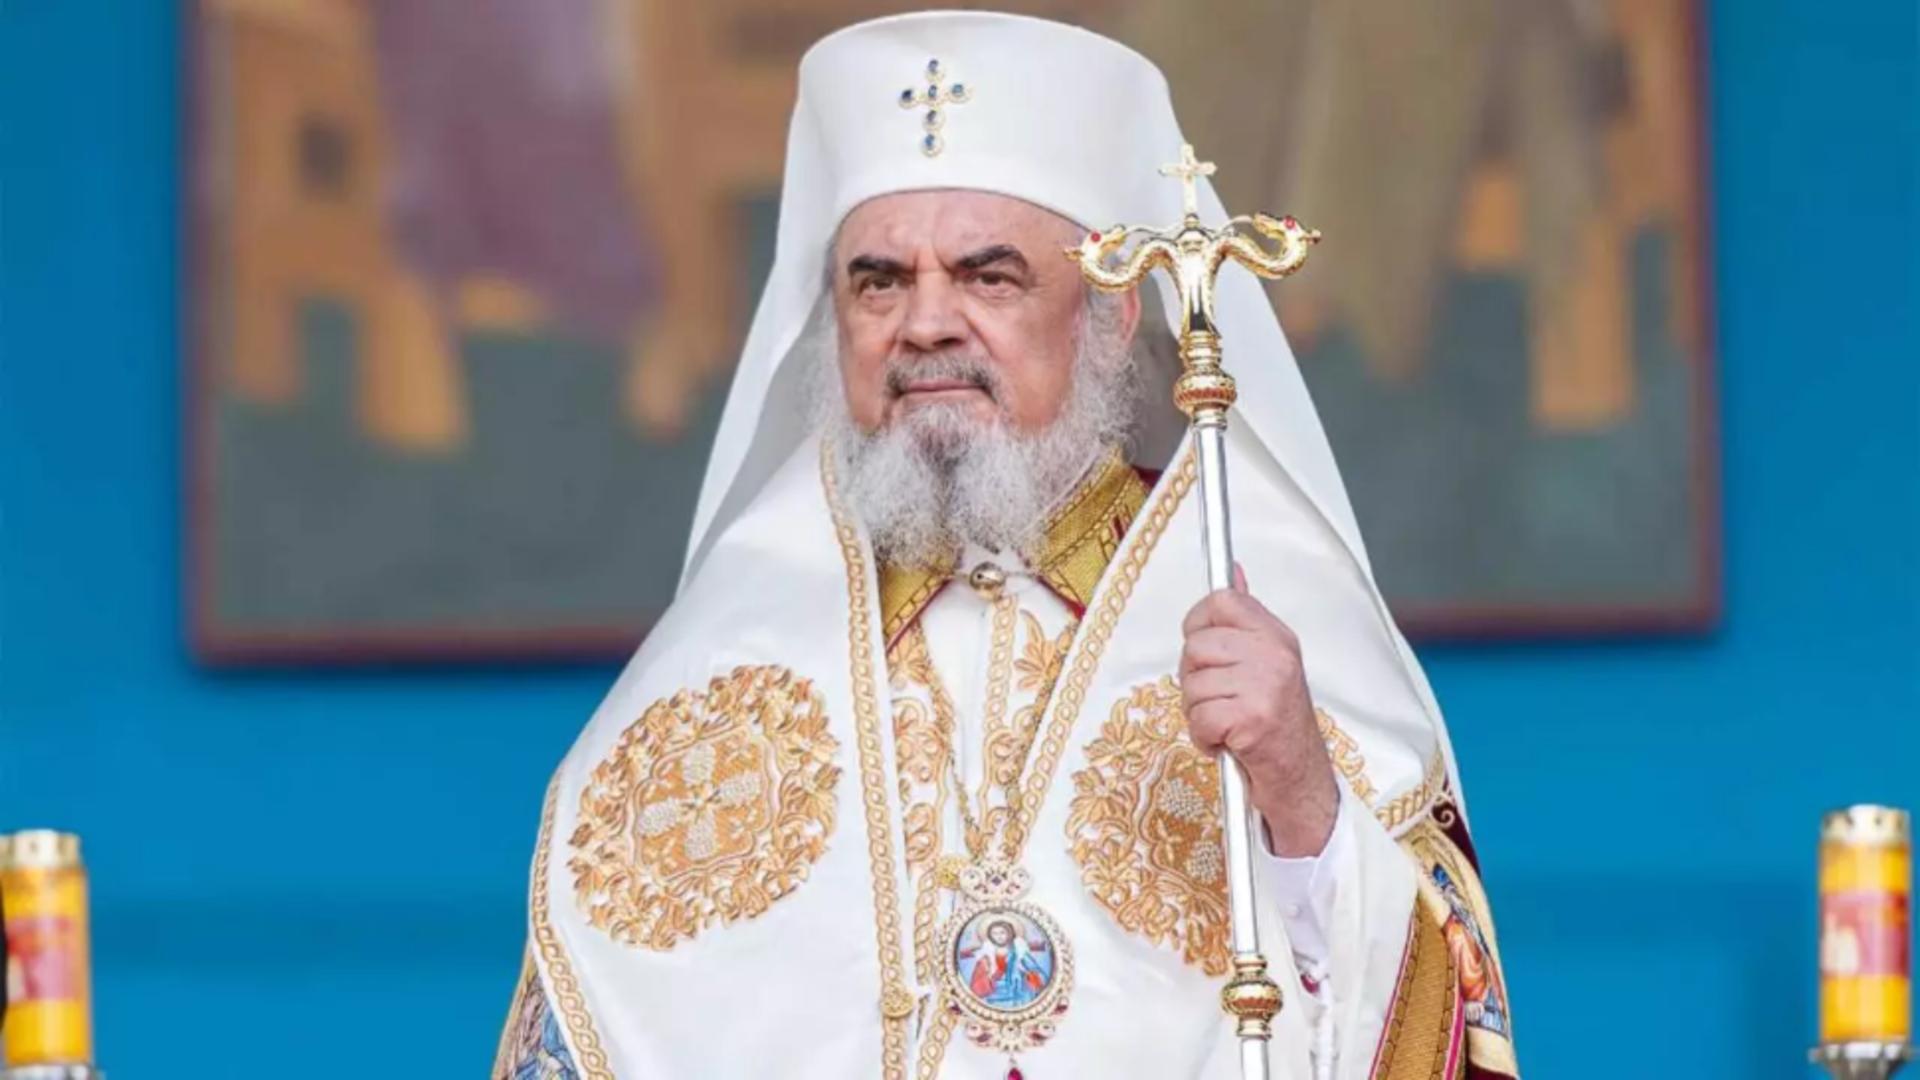 VIDEO Mesajul Patriarhului Daniel de Înviere: Sfintele Paşti reprezintă sărbătoarea iertării, a păcii şi a bucuriei